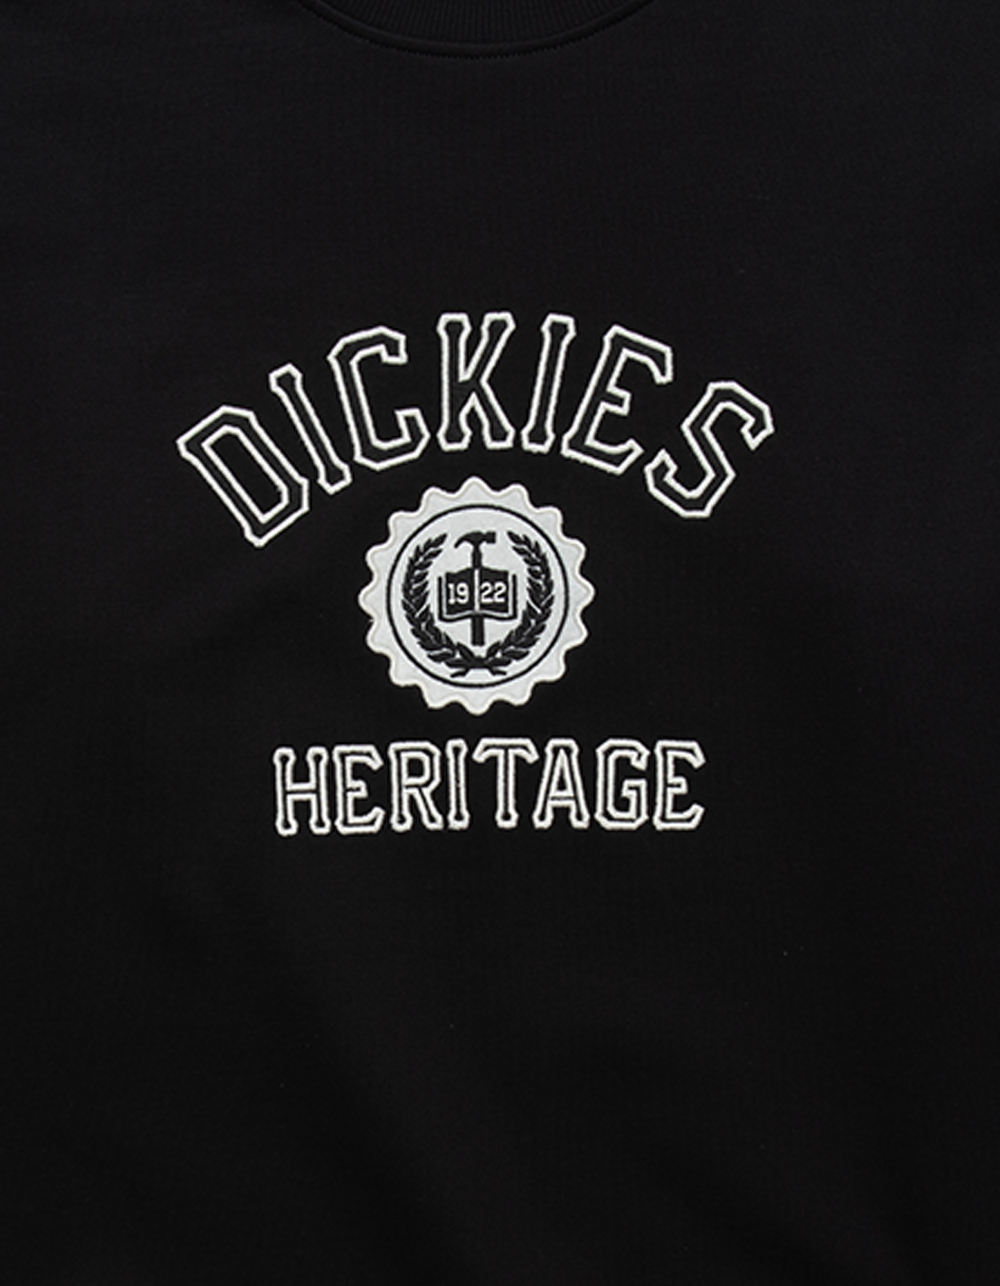 DICKIES Oxford Mens Crewneck Sweatshirt - NATURAL